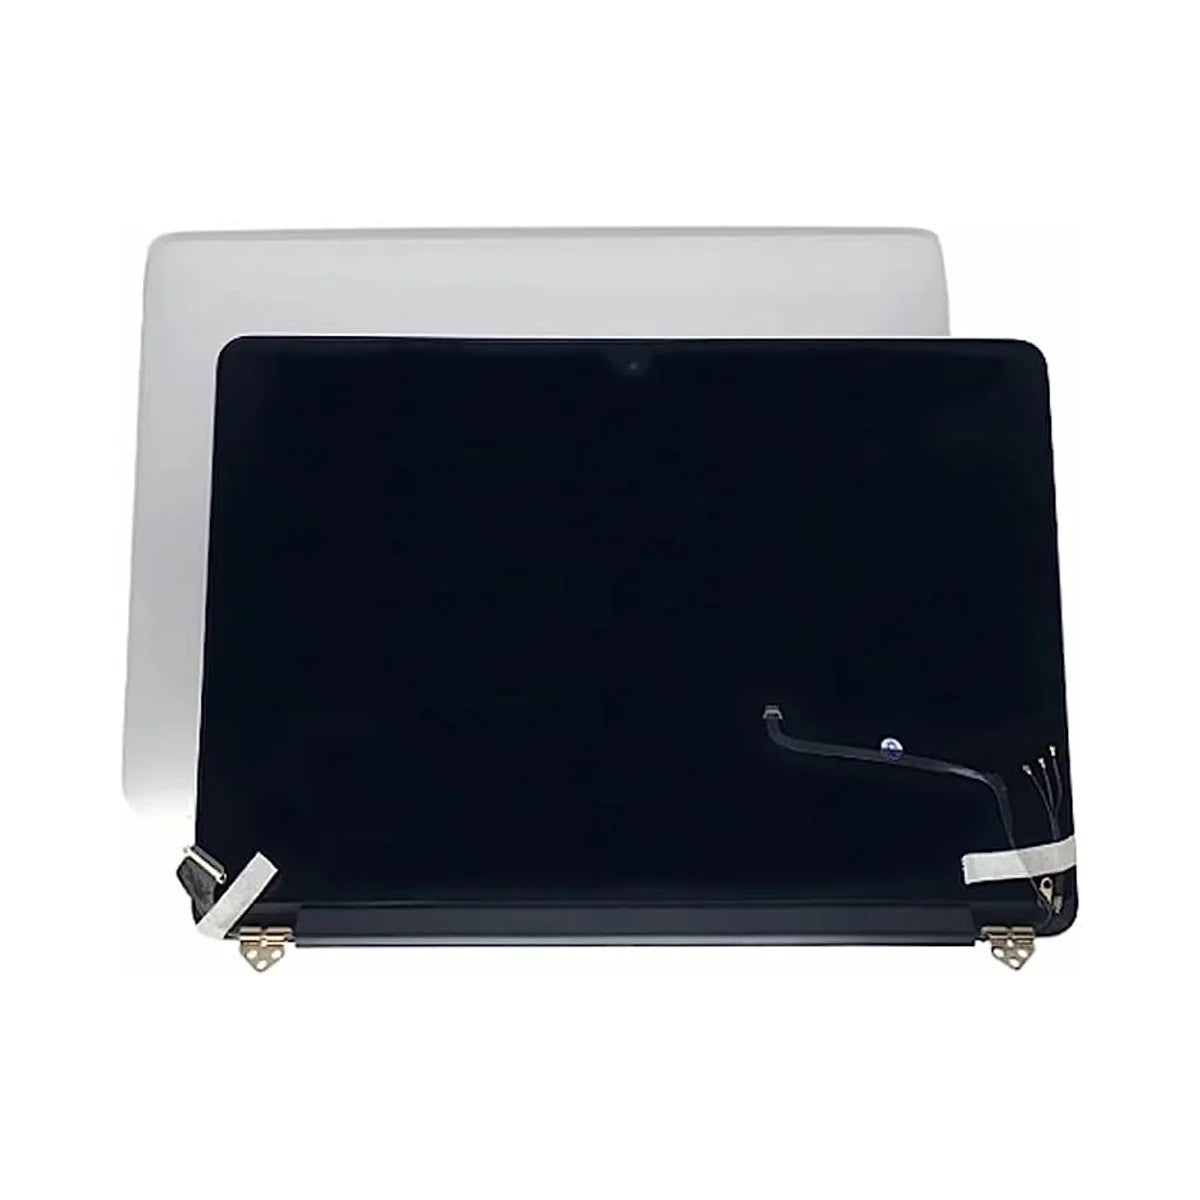 Amazon Ebay Top (SEVEN PUPPY) nuevo para MacBook Pro 15 "A1398 2015 año Retina reemplazo de conjunto de pantalla LCD completa